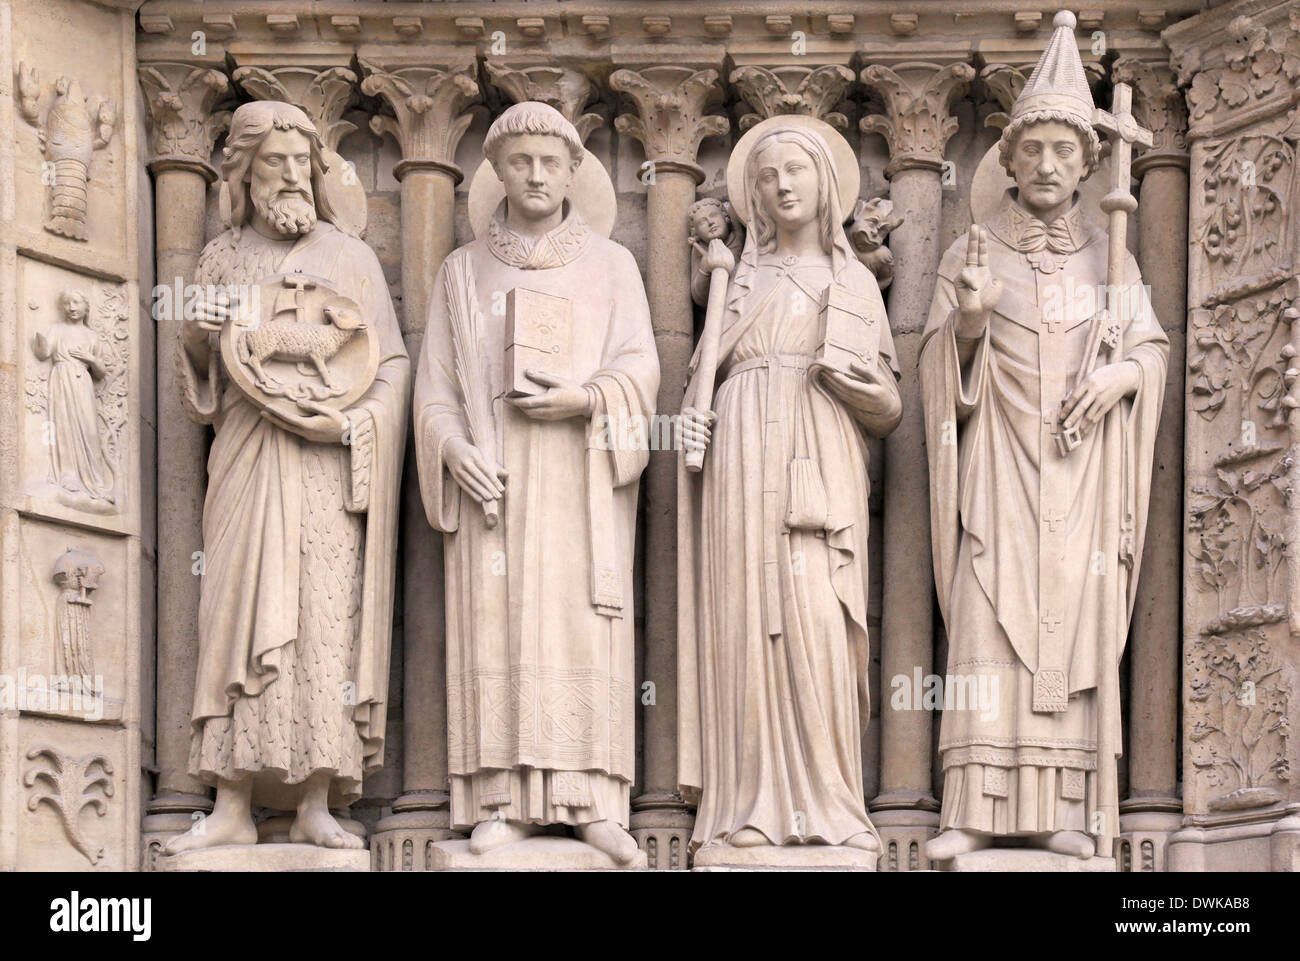 Architectural details of Cathedral Notre Dame de Paris Stock Photo